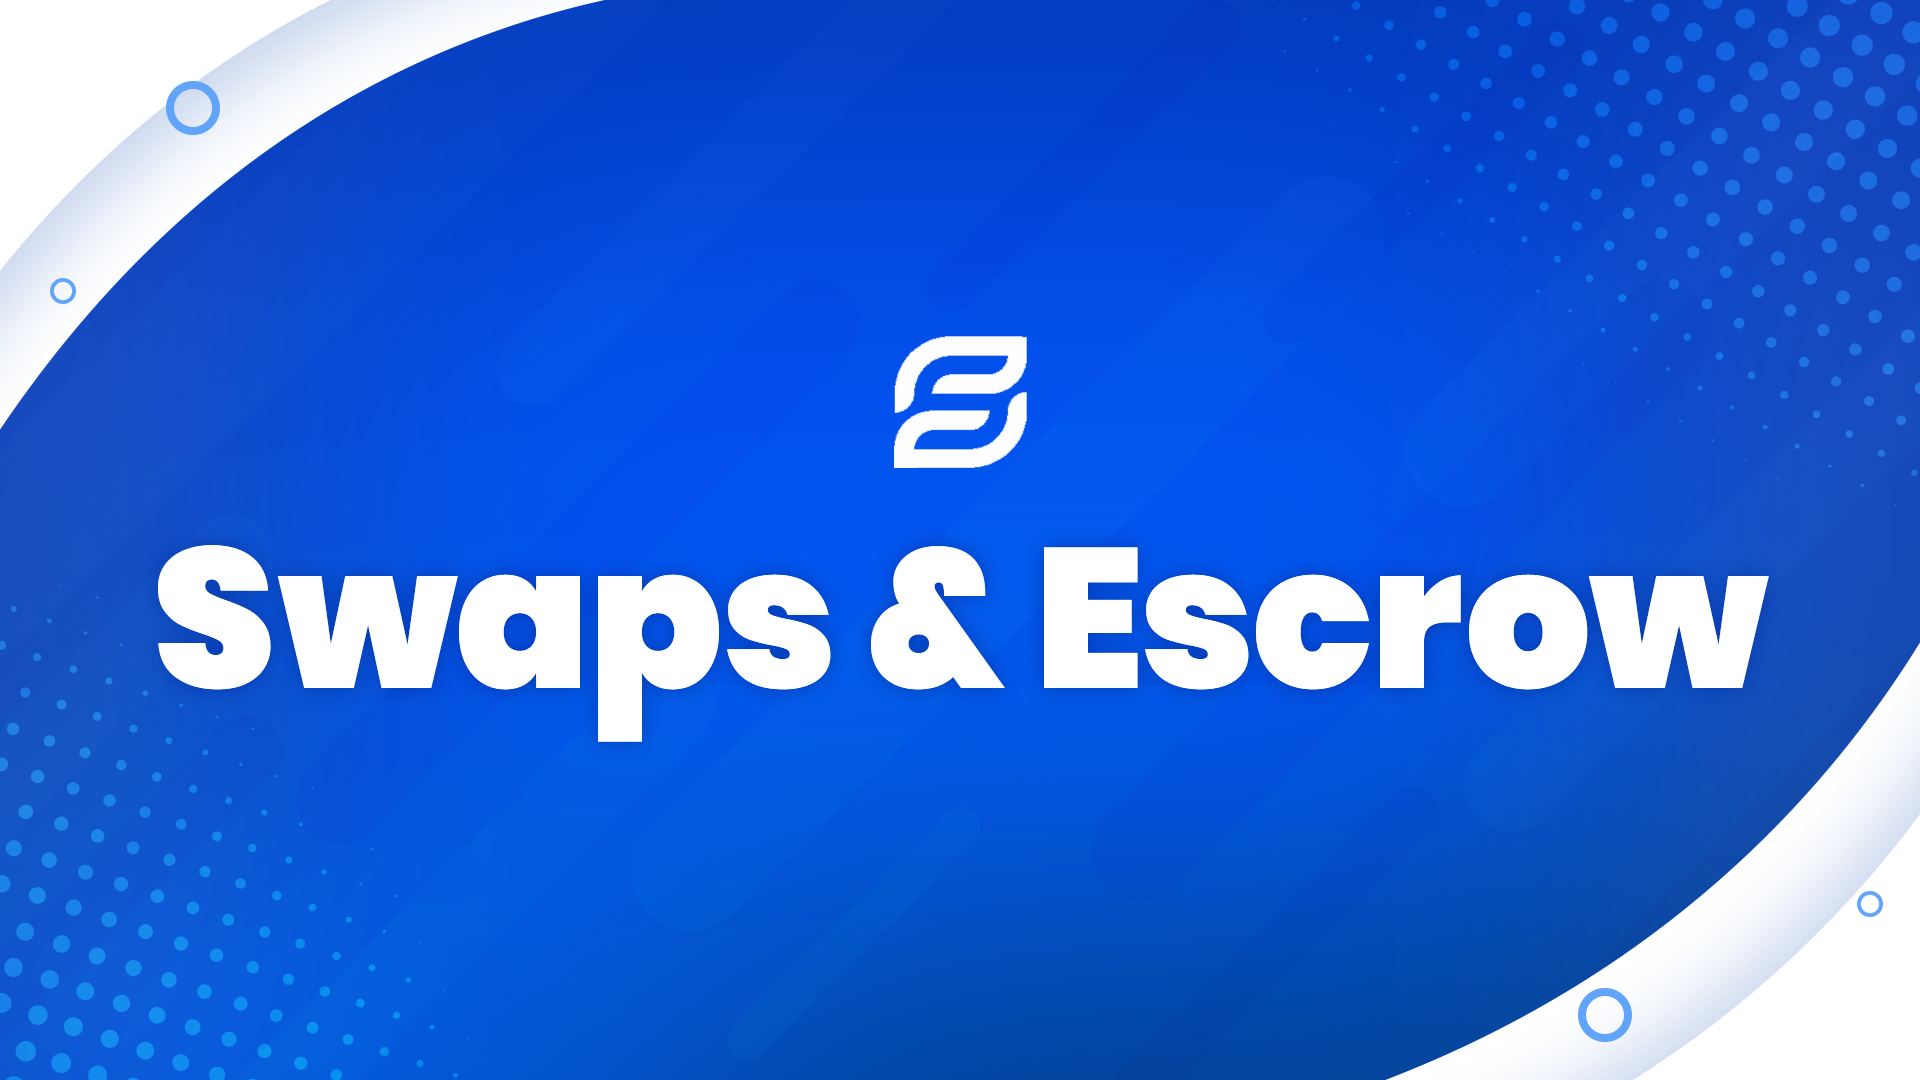 Swaps & Escrow